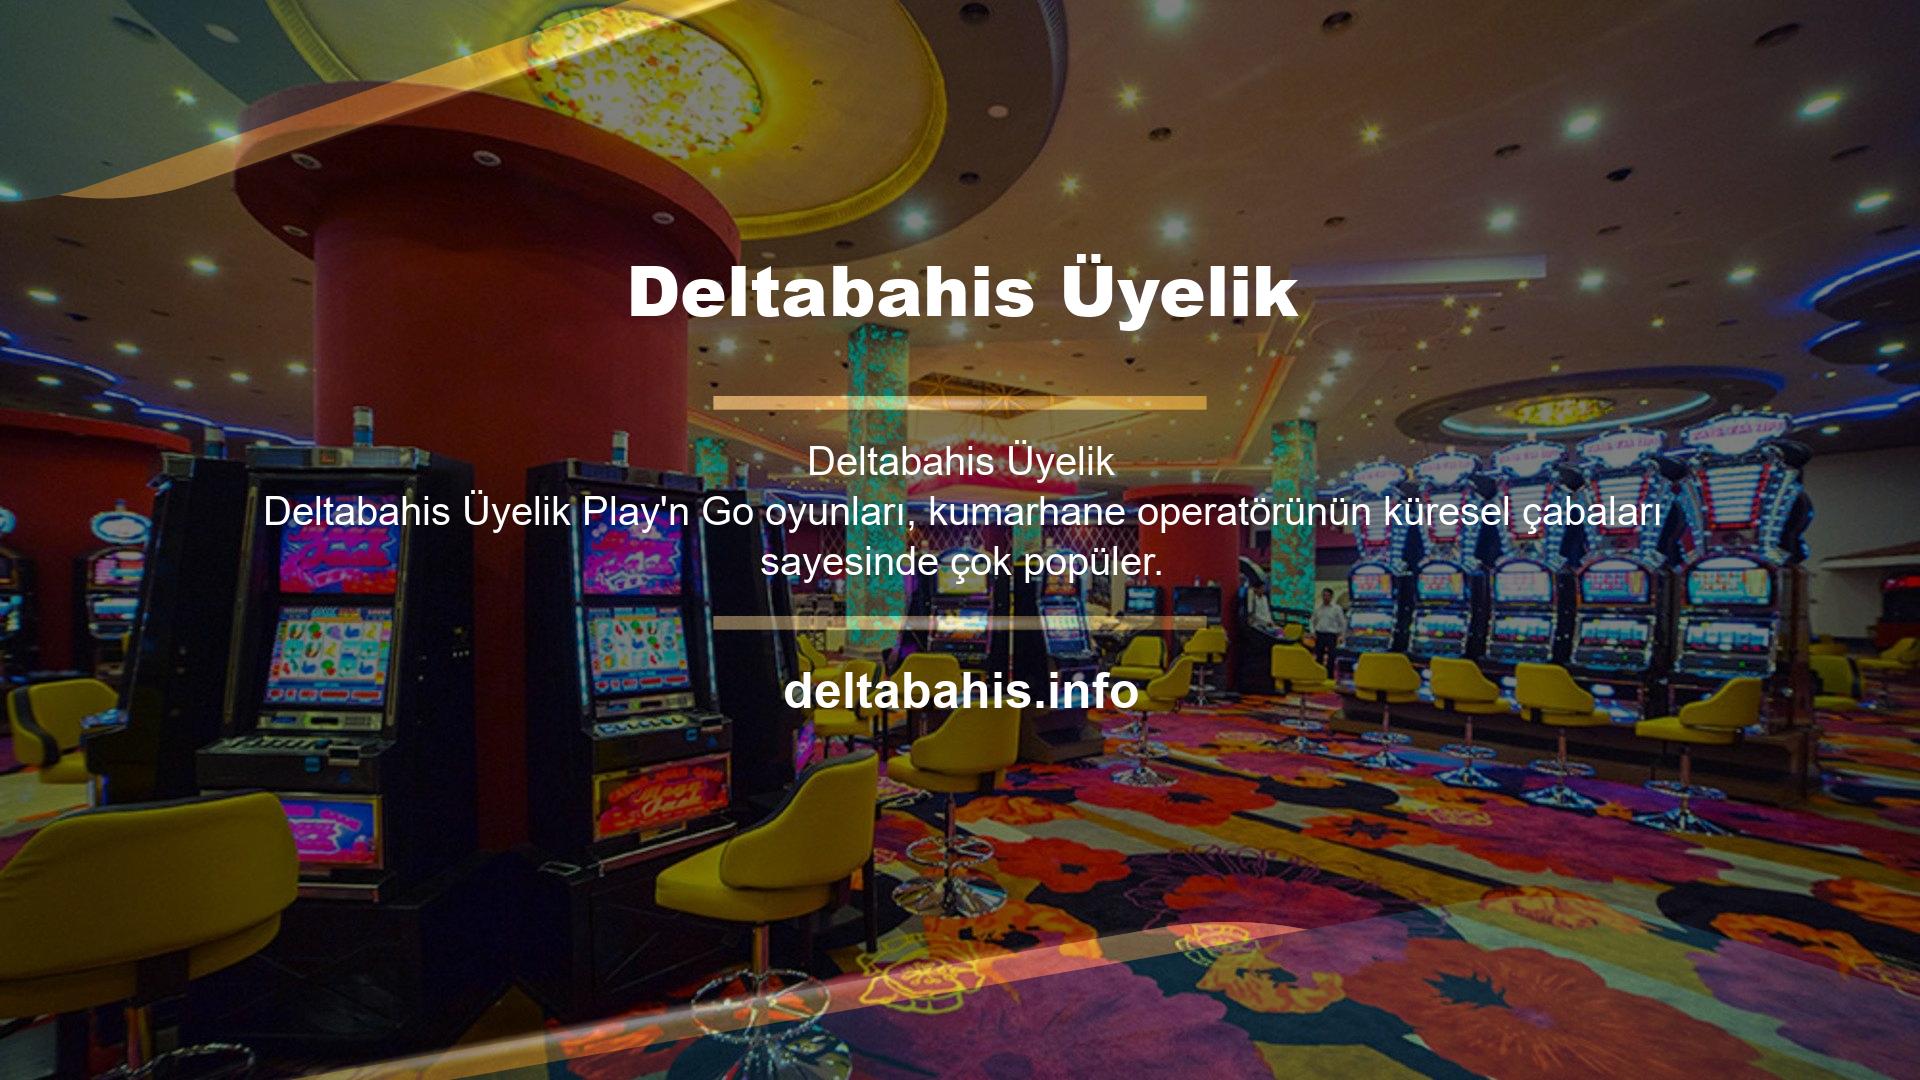 Ayrıca sitenin birçok üyesi oyuncular için casino oyunları bölümünden Play'n Go firmasının oyunlarına kolaylıkla ulaşabilmektedir